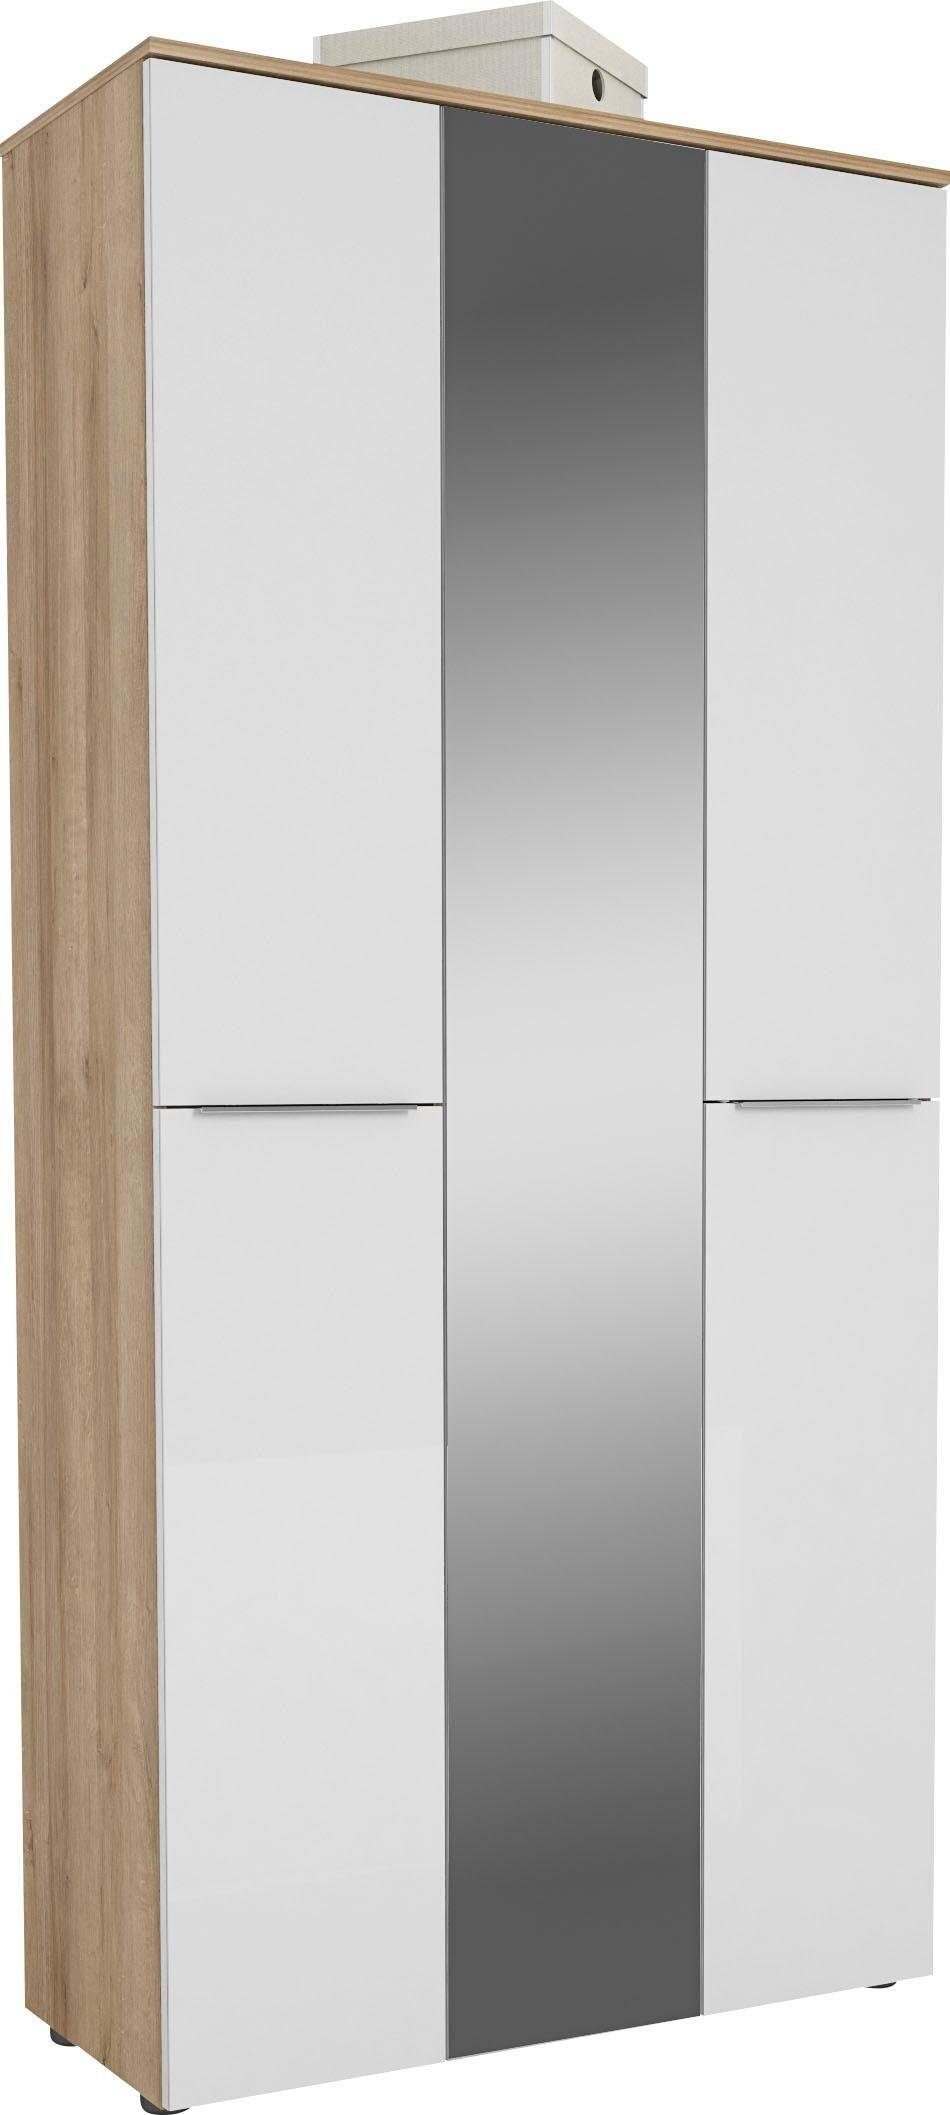 Maja Möbel Garderobenschrank TREND Garderobenschrank 2571 Oberplatte Holz,  mittlere Tür mit Spiegel, 1 ausziehbare Kleiderstange